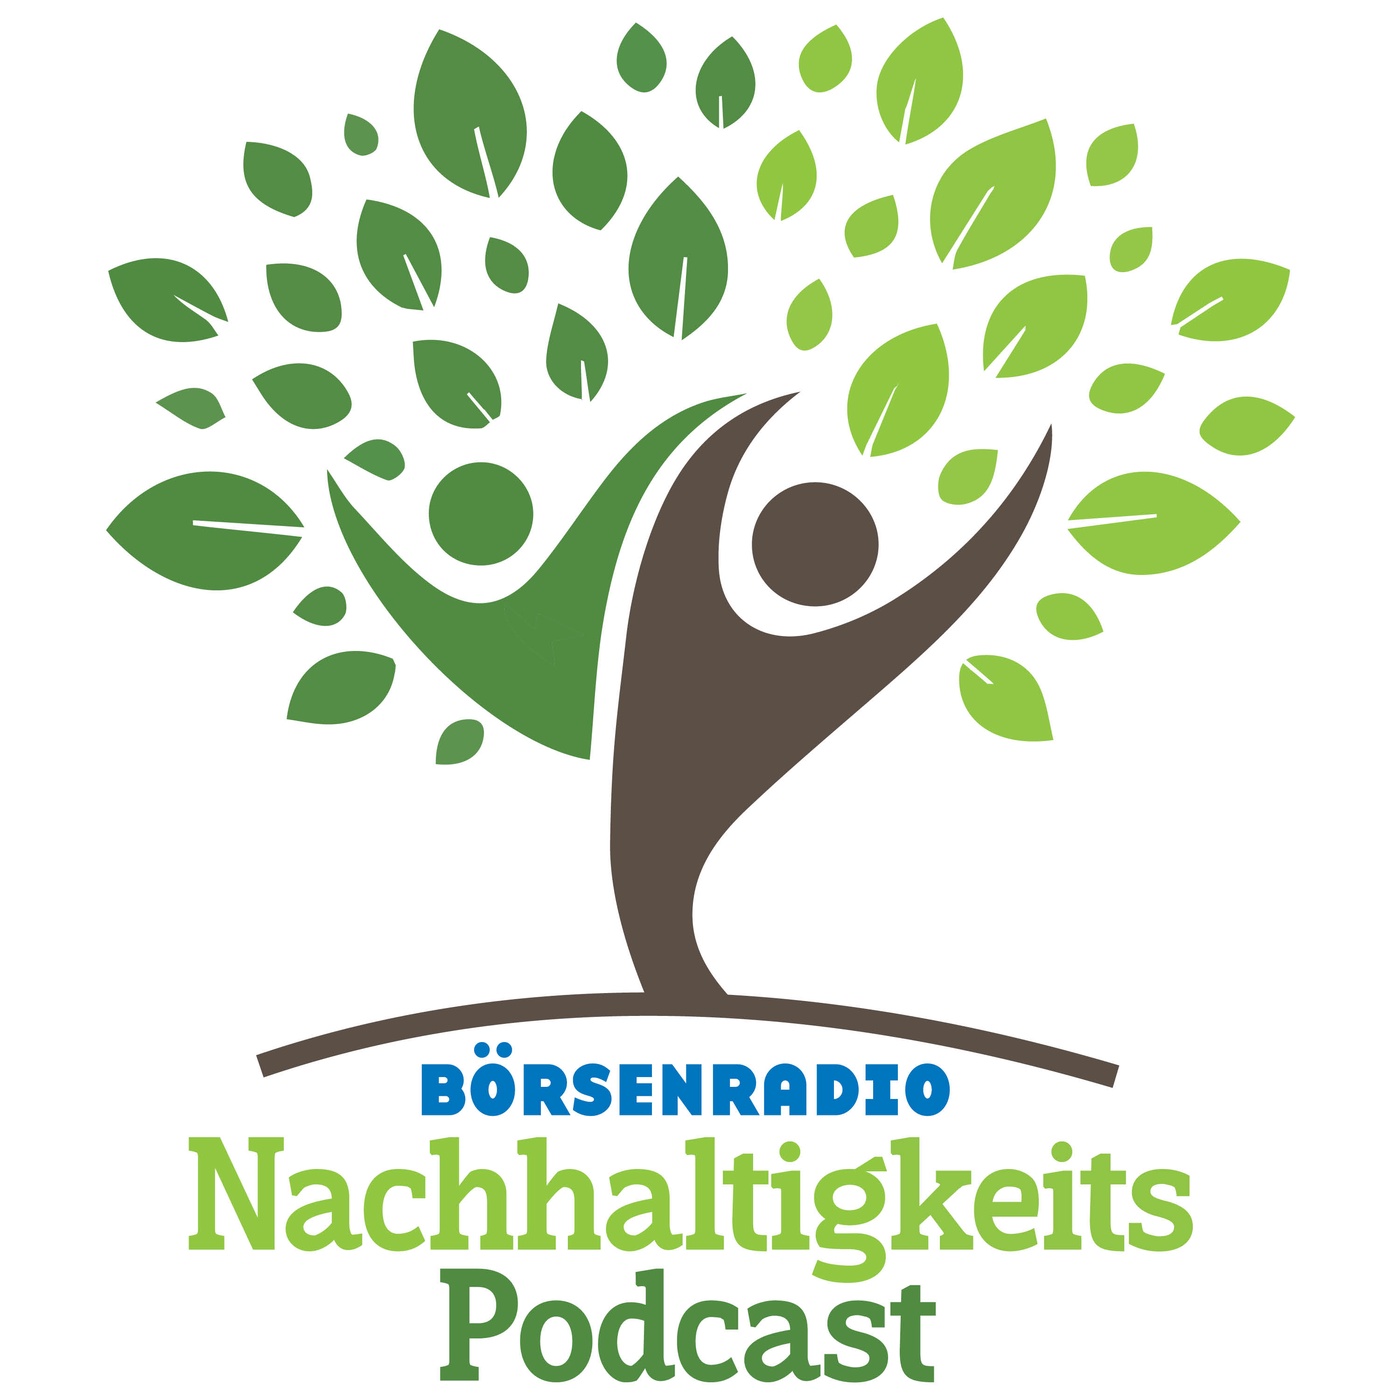 Der Nachhaltigkeitspodcast von Börsenradio